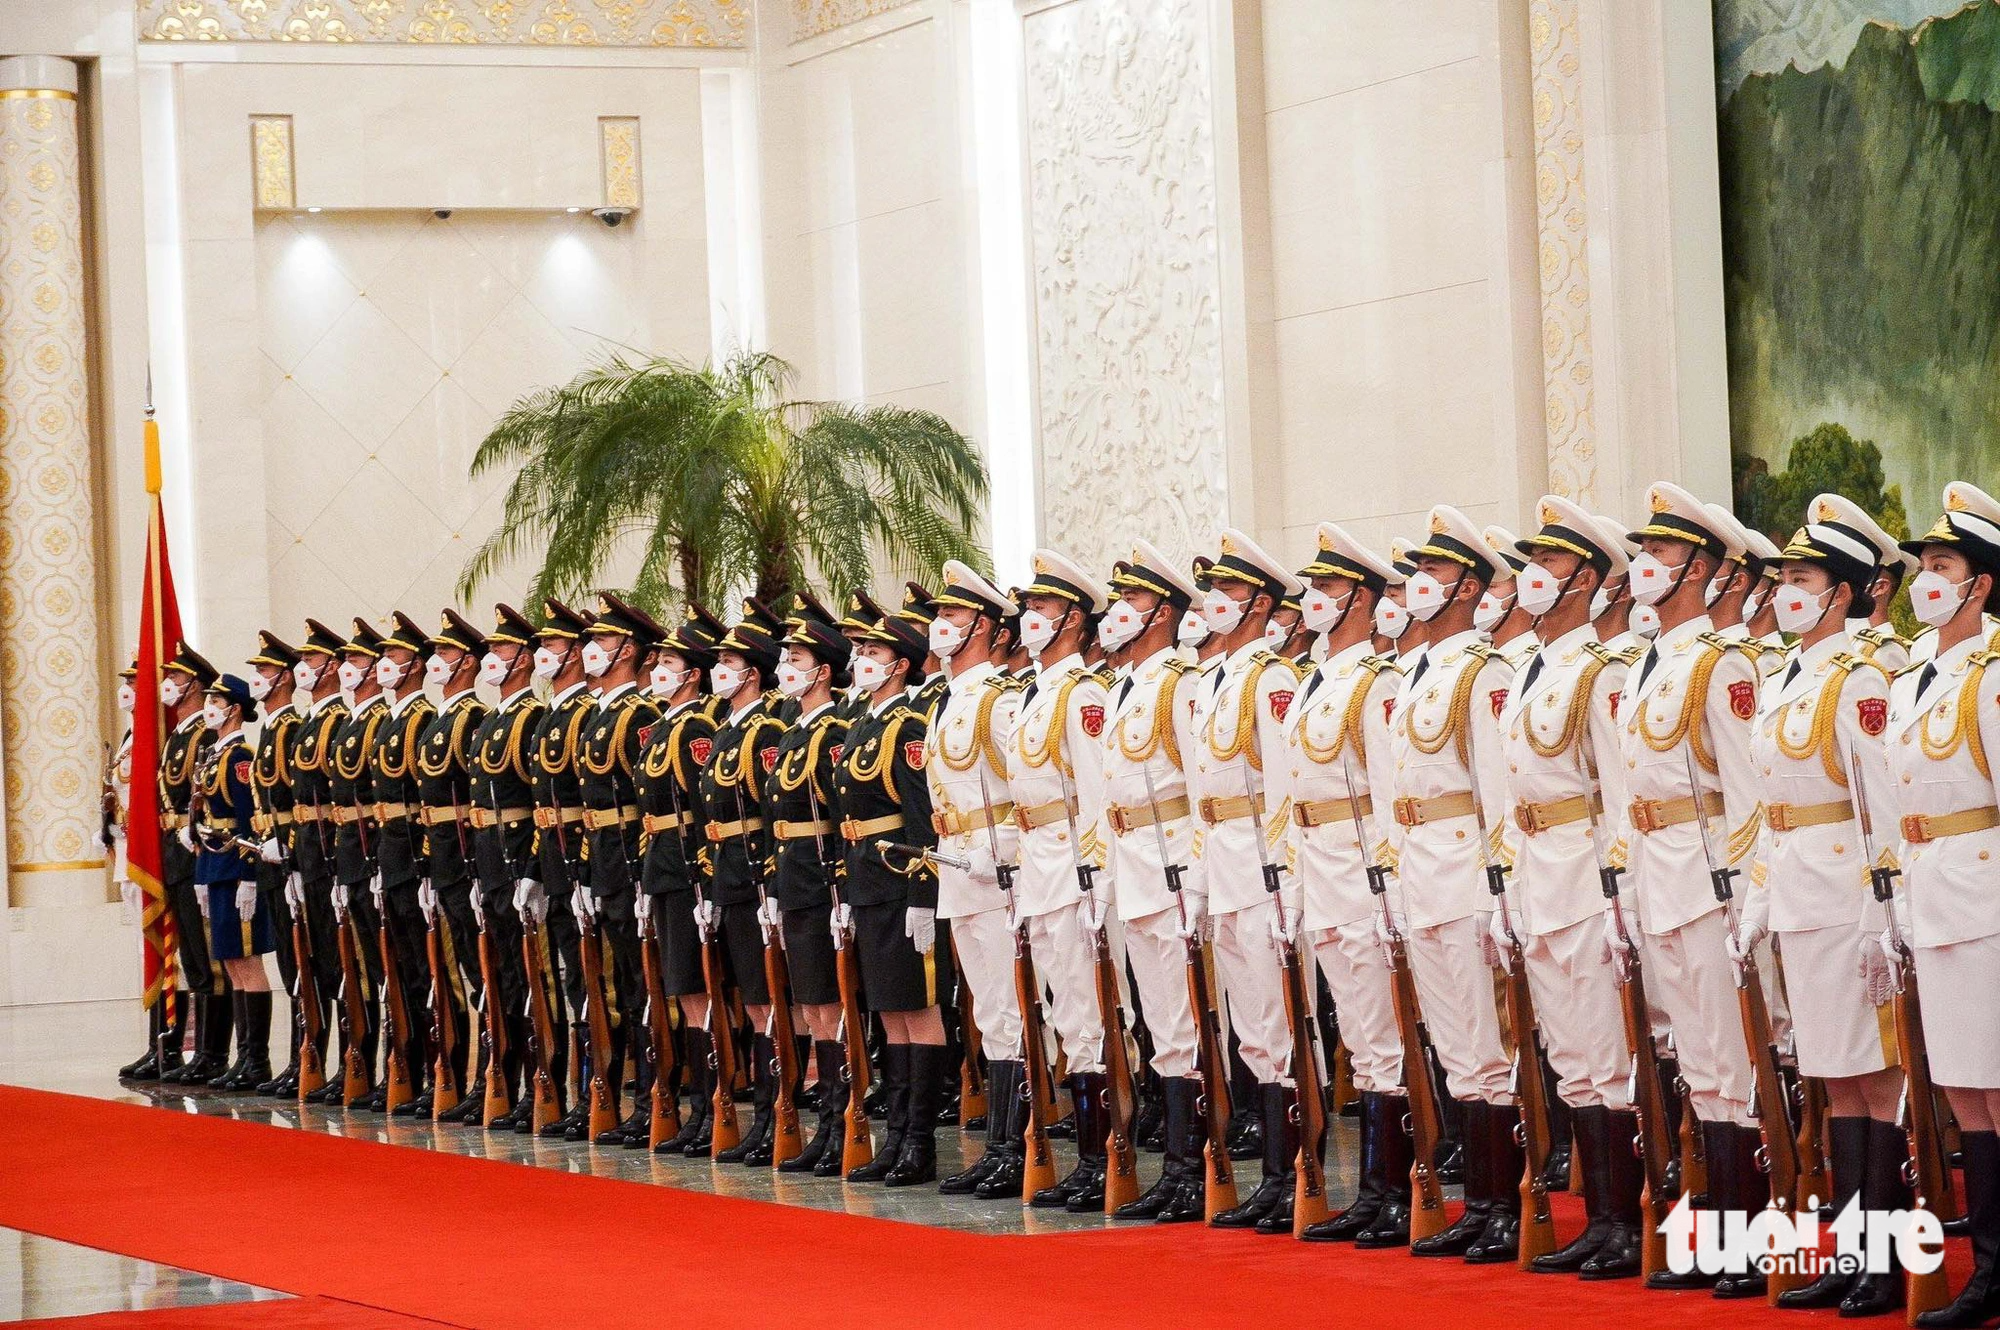 Hàng tiêu binh danh dự chào đón Thủ tướng Phạm Minh Chính và đoàn đại biểu cấp cao Việt Nam - Ảnh: NGỌC AN